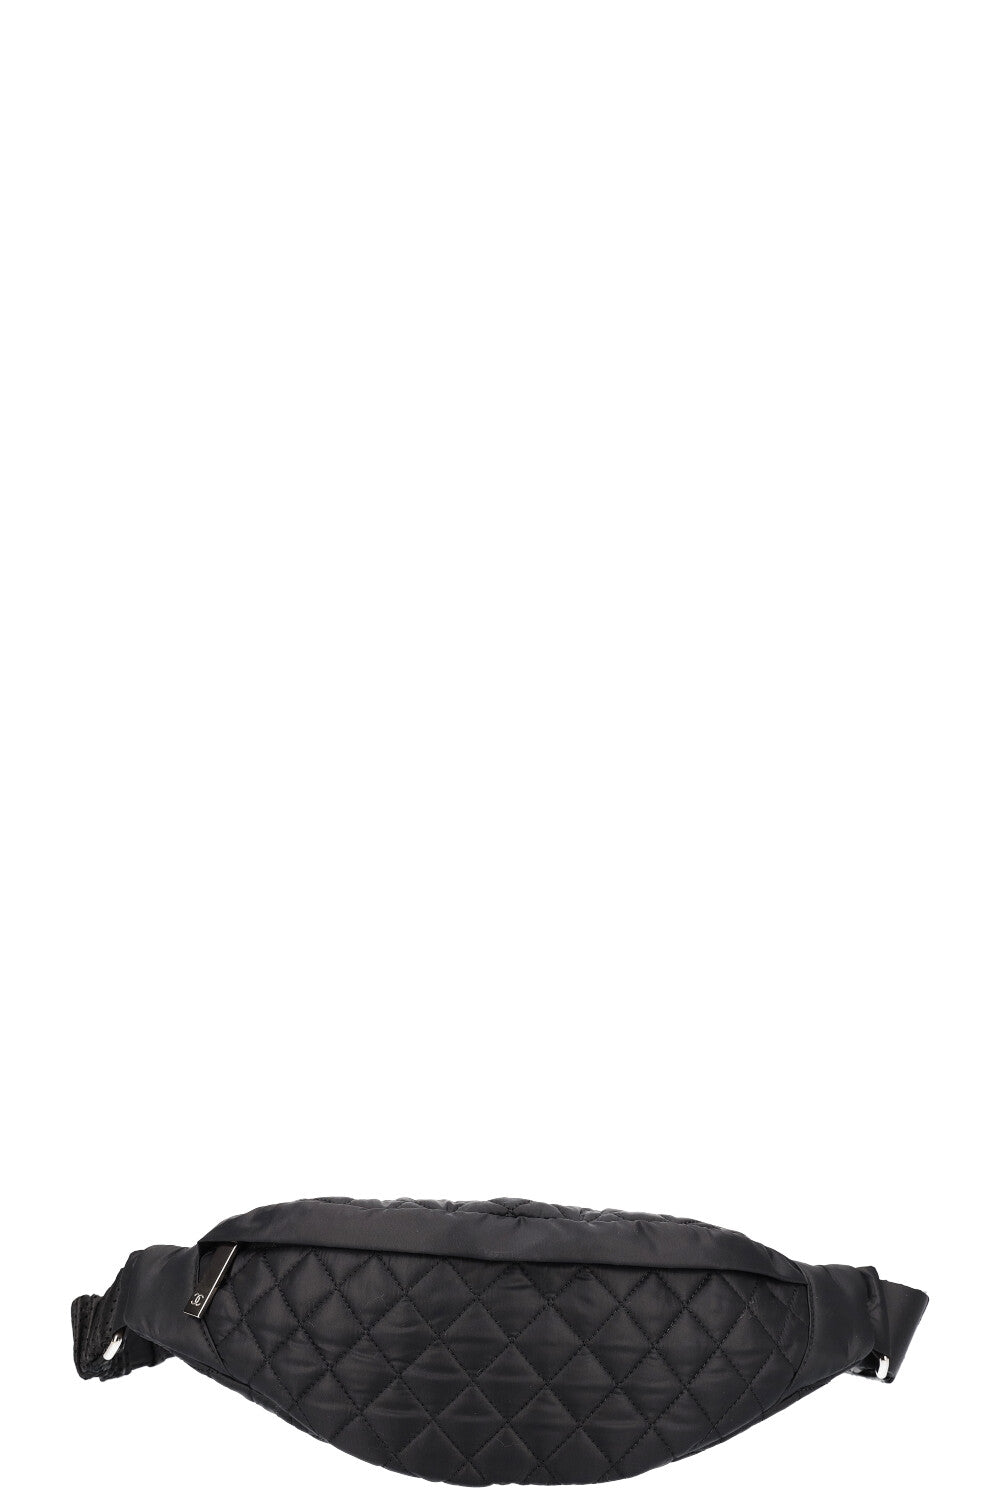 Chanel Belt Bag Nylon Black 2014-2015